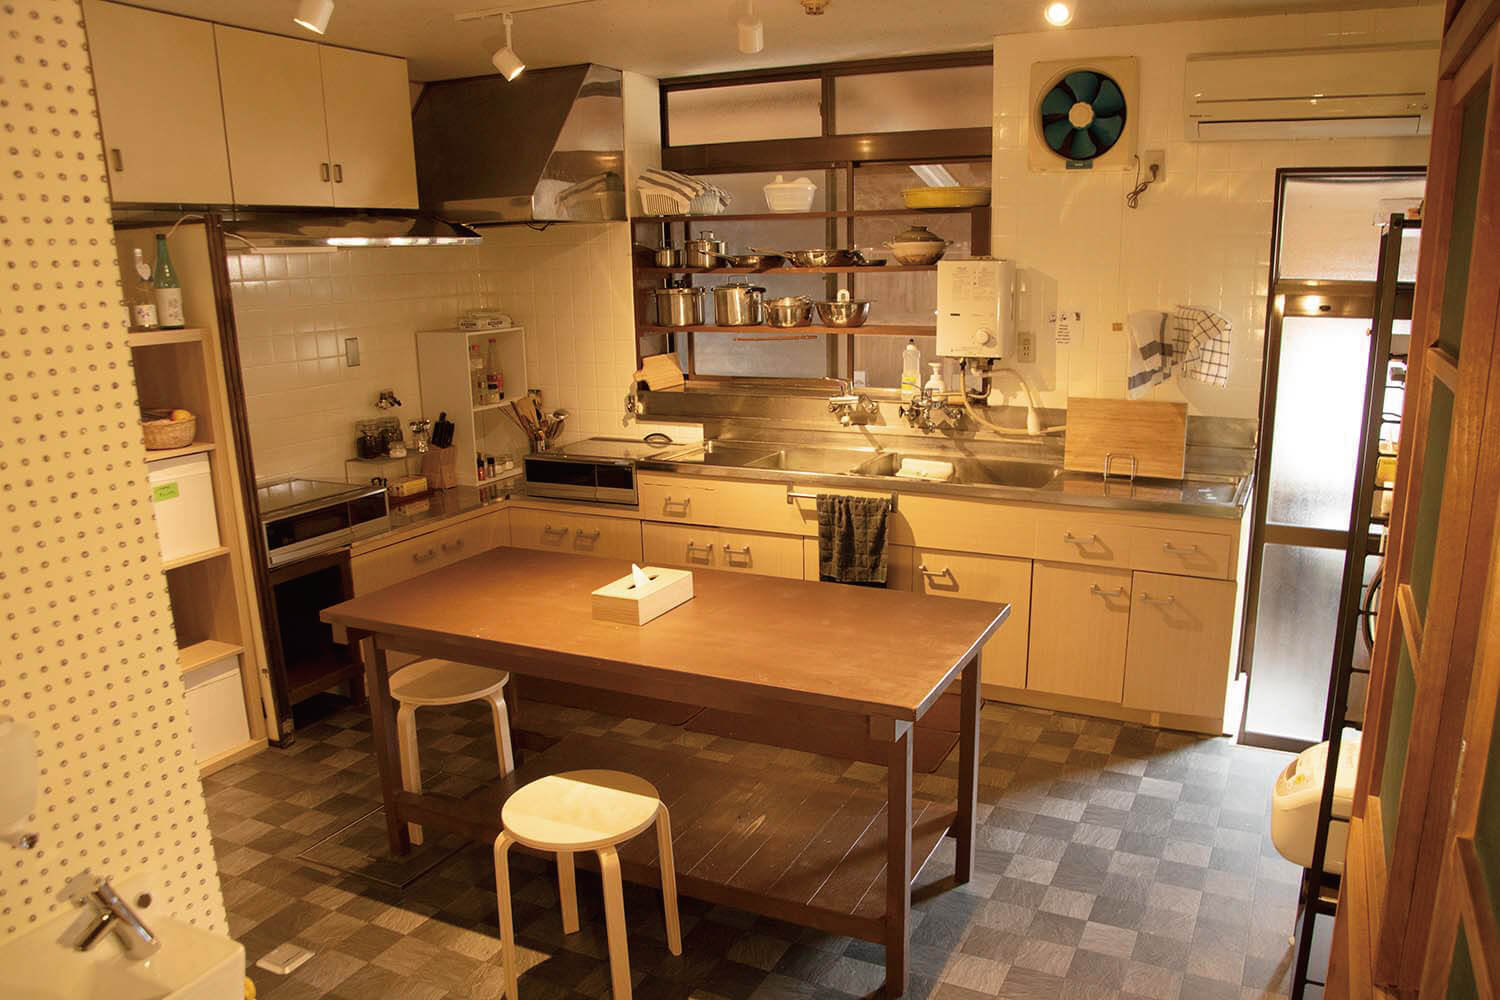 Common kitchen area